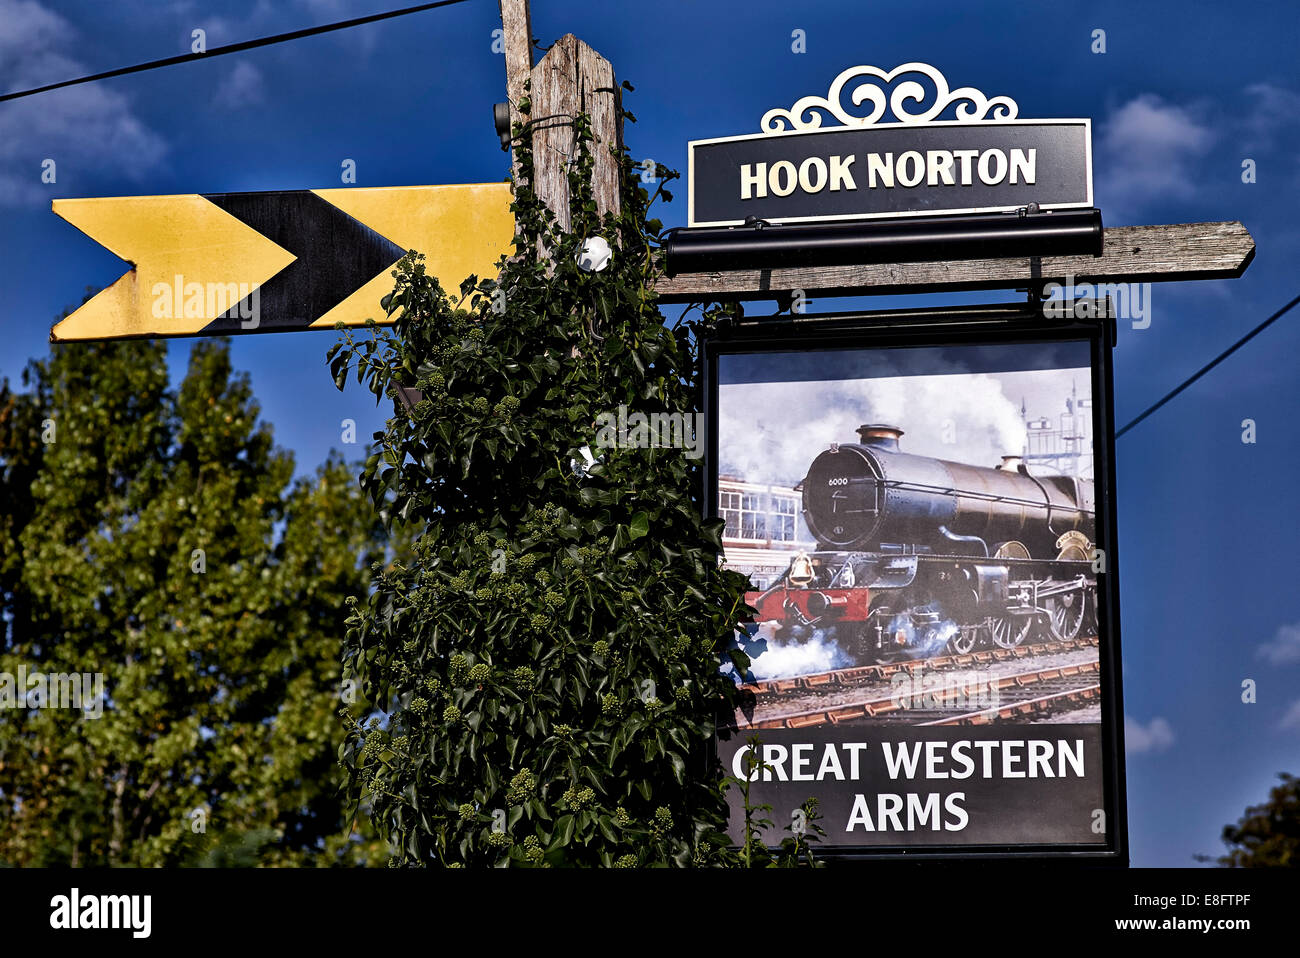 Pub inglese segno che commemora la Great Western Railway. Great Western Arms, Aynho Banbury Oxfordshire England Regno Unito Foto Stock